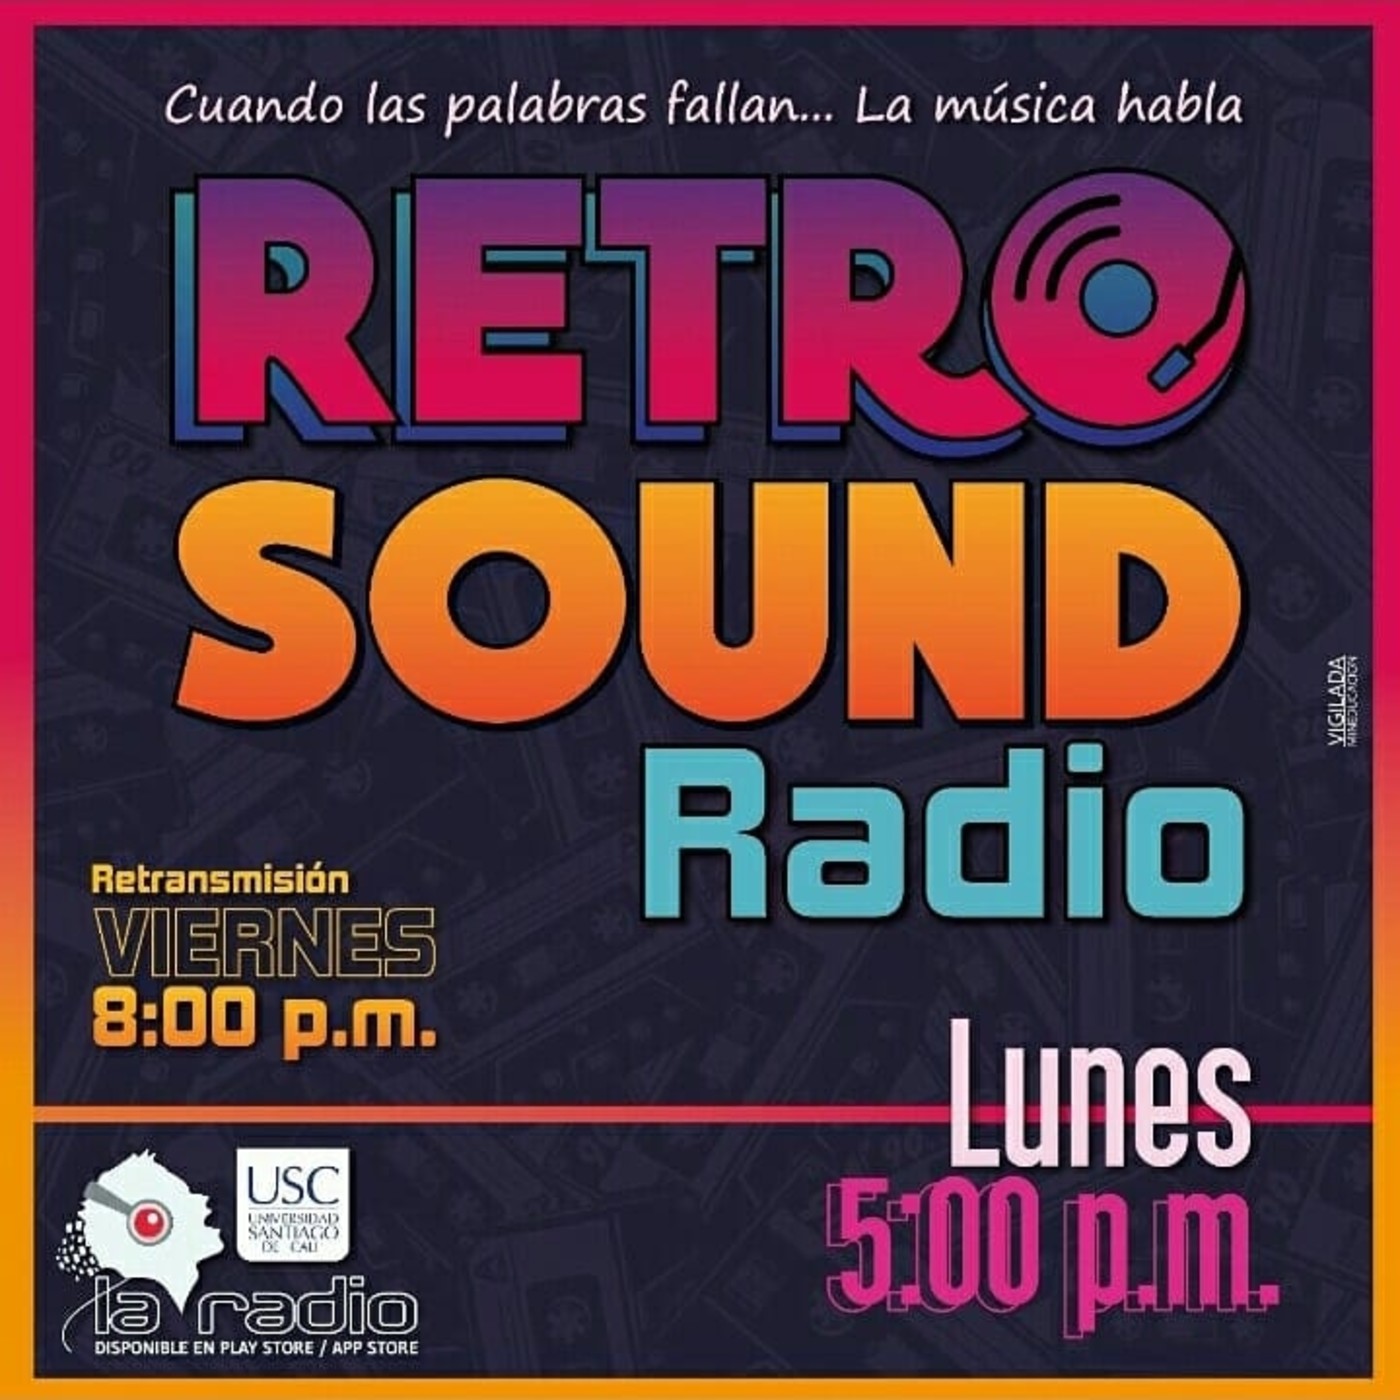 Retro Soun Radio- PRG. 70- Segundo especial Covers de los 70's